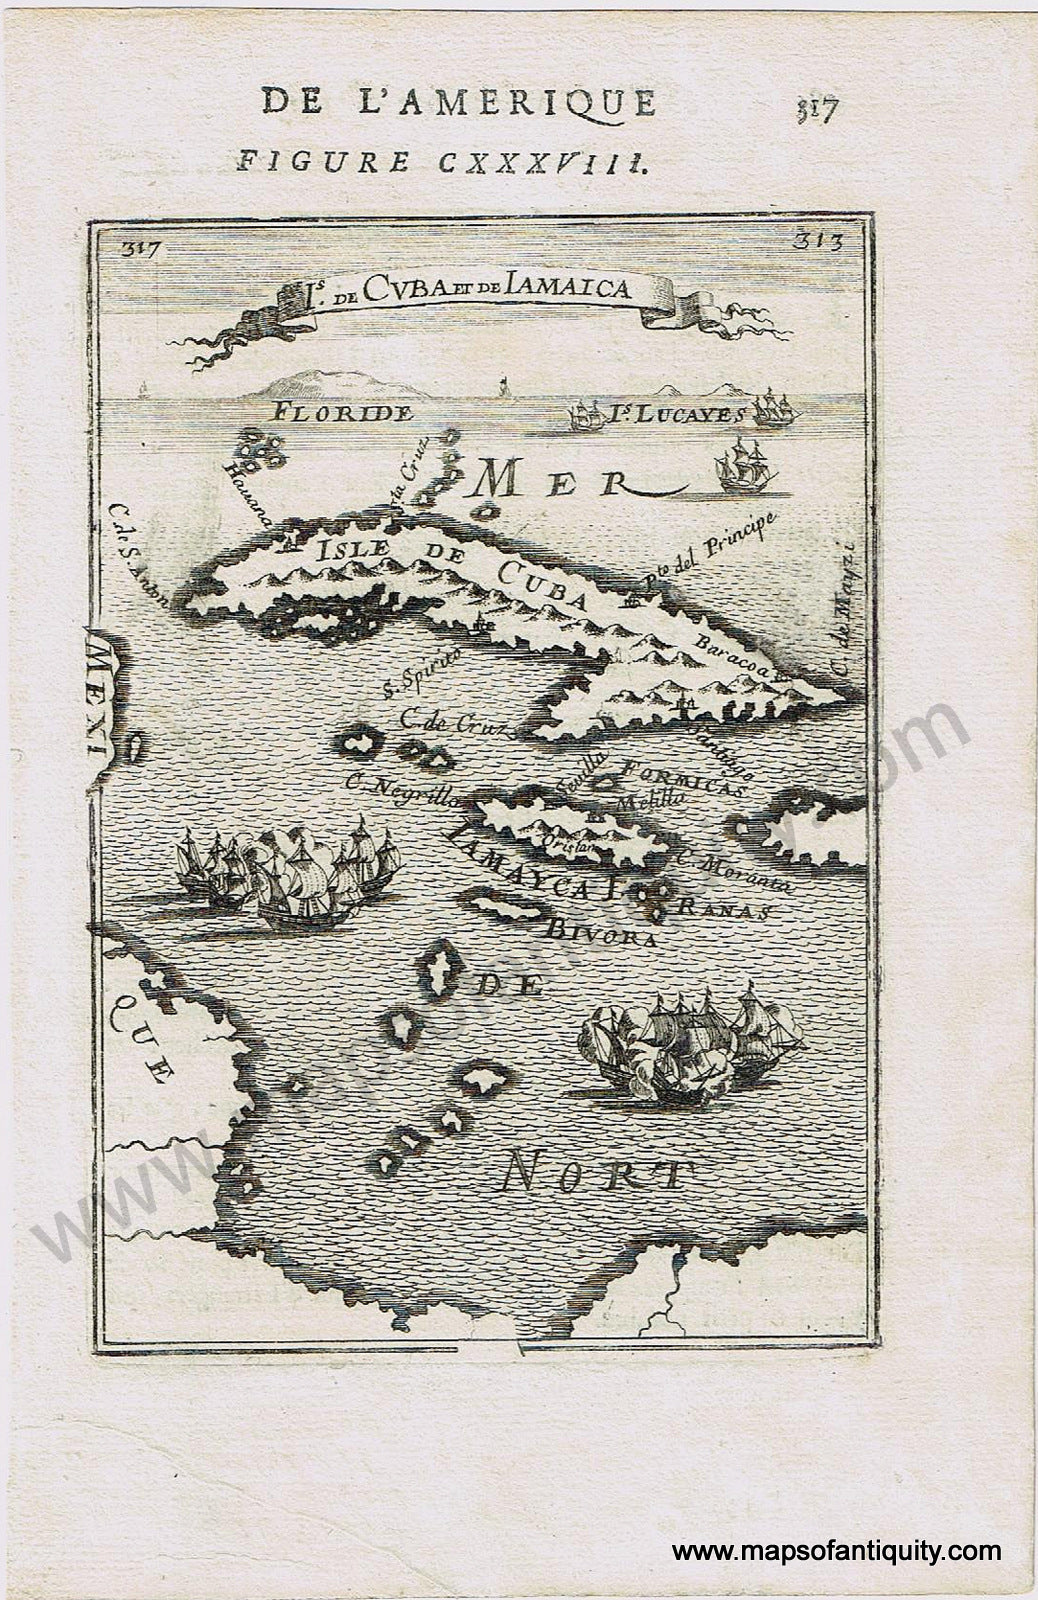 Antique-Map-Caribbean-Cuba-Jamaica-Iamaica-Mallet-1683-1680s-1600s-17th-century-Maps-of-Antiquity